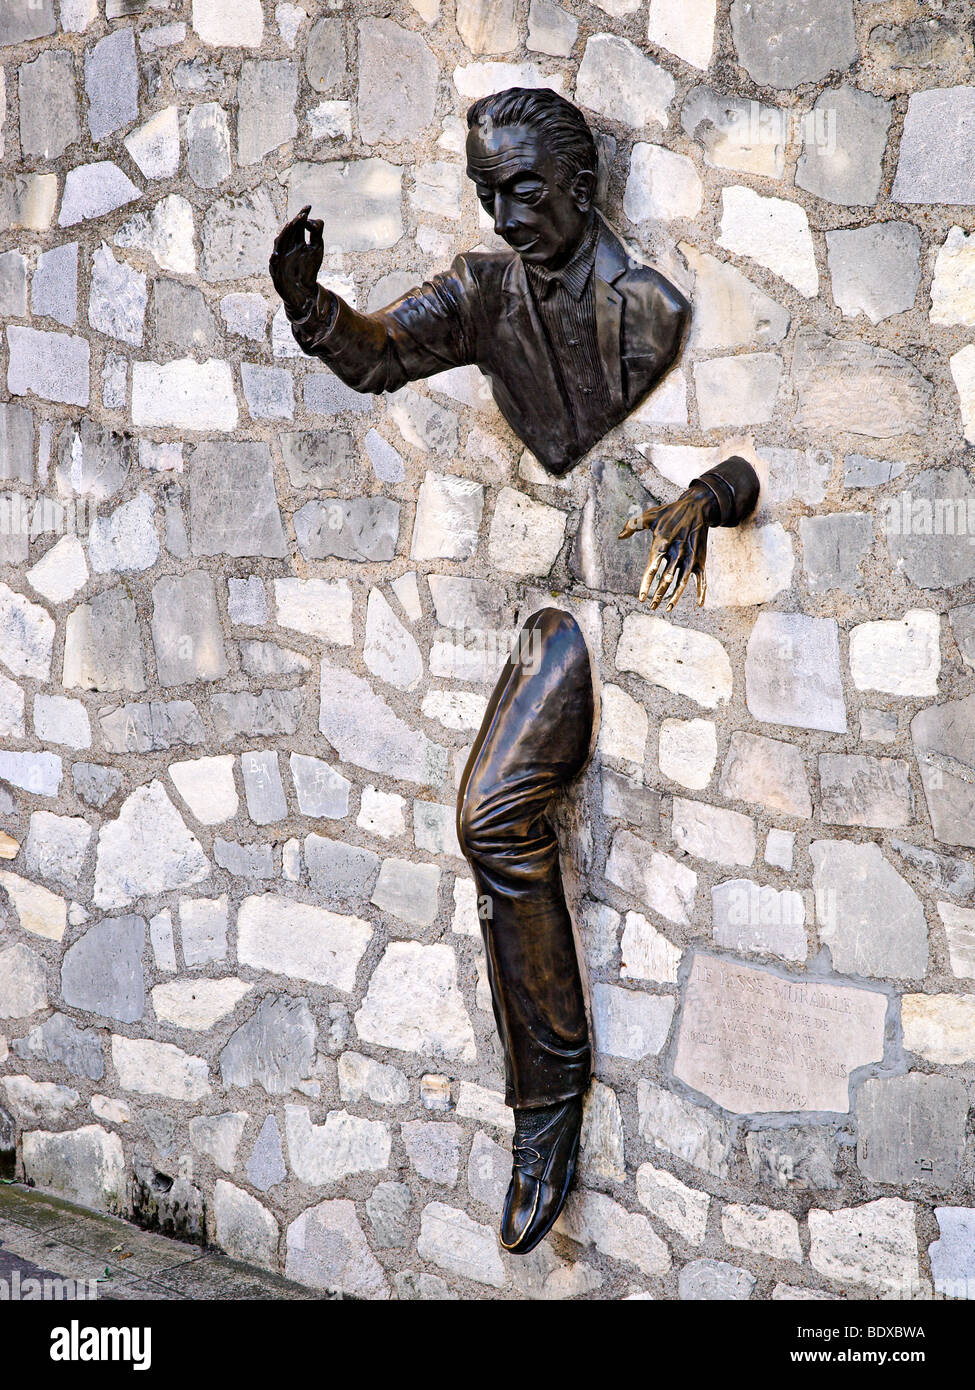 The statue; Le Passe Muraille at Montmartre, Paris, France. Stock Photo